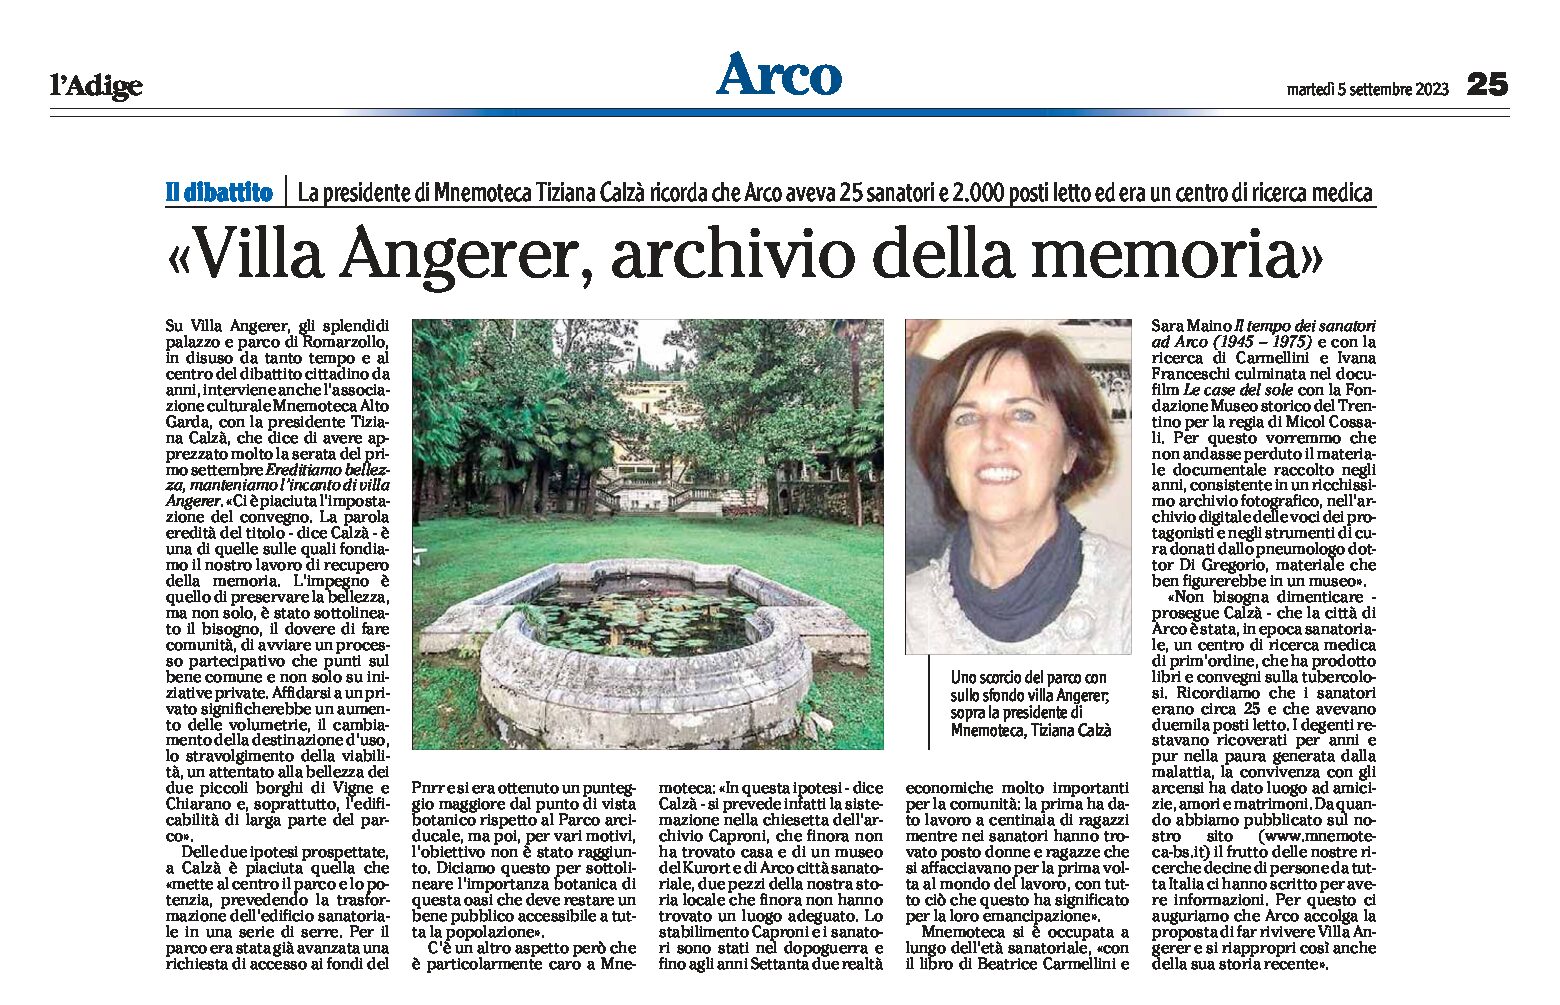 Arco, Romarzollo: dibattito su Villa Angerer, archivio della memoria